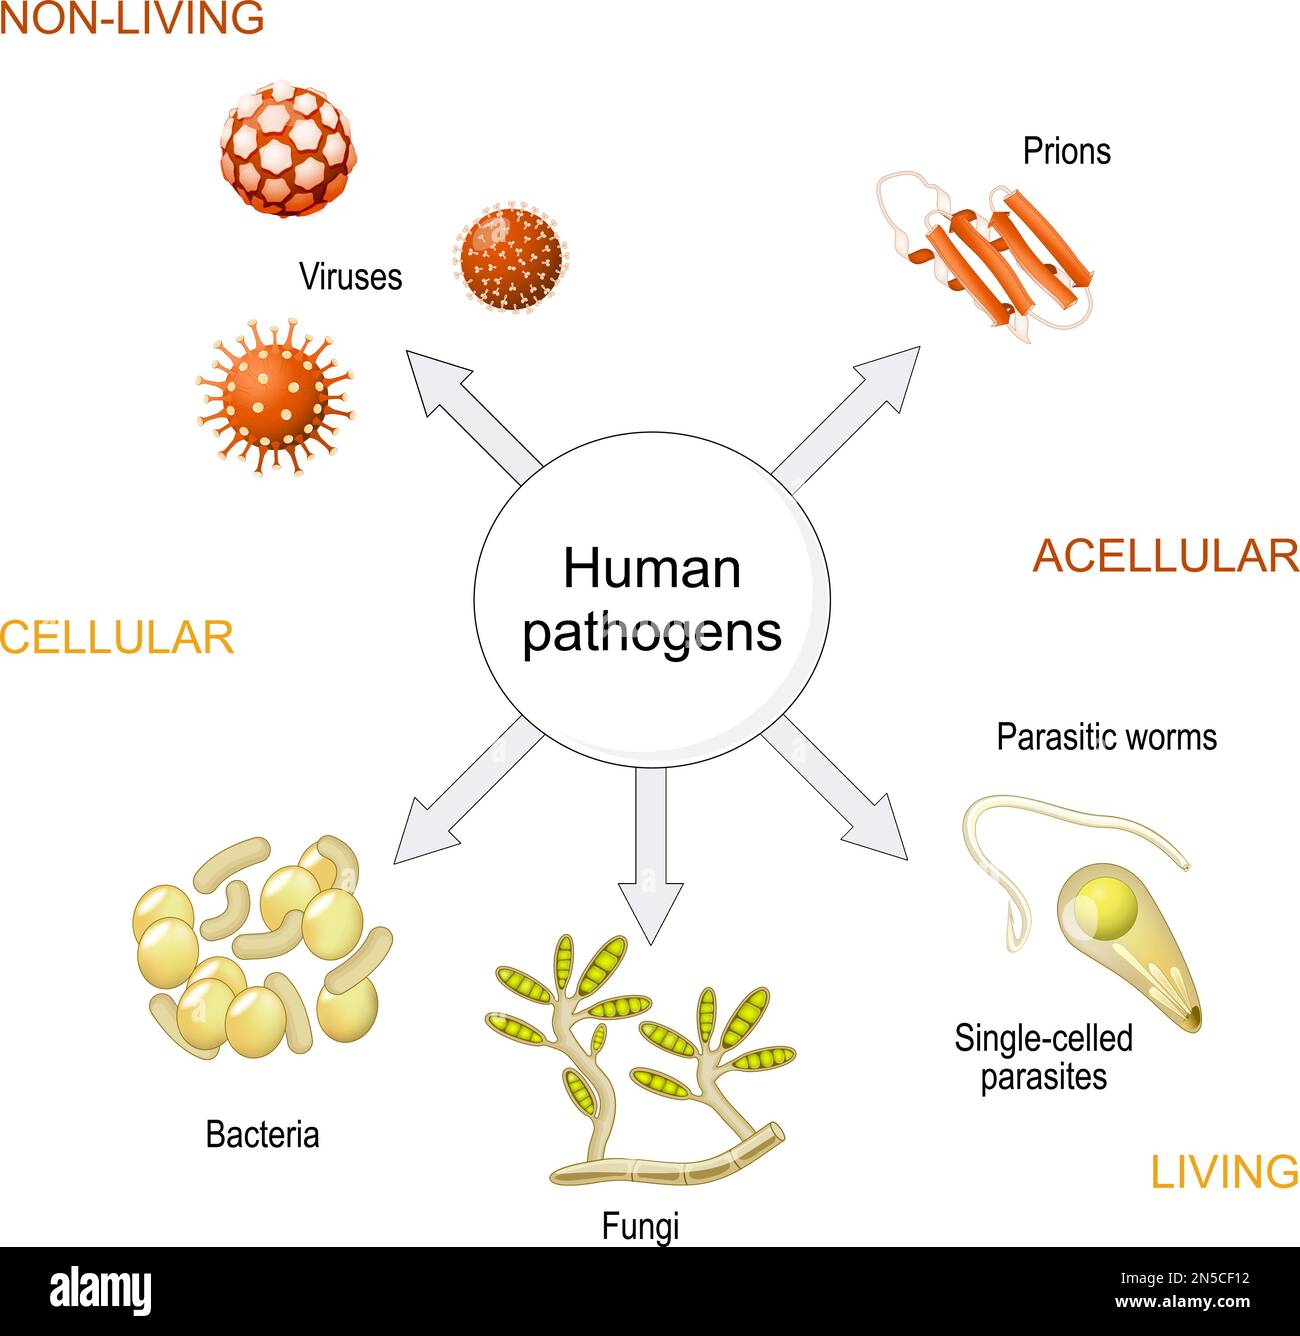 Arten von Infektionserregern von Prionen und Viren bis hin zu Bakterien, Pilzen, Würmern, einzelligen und einzelligen Organismen. Detailliertes Diagramm über Acellul Stock Vektor